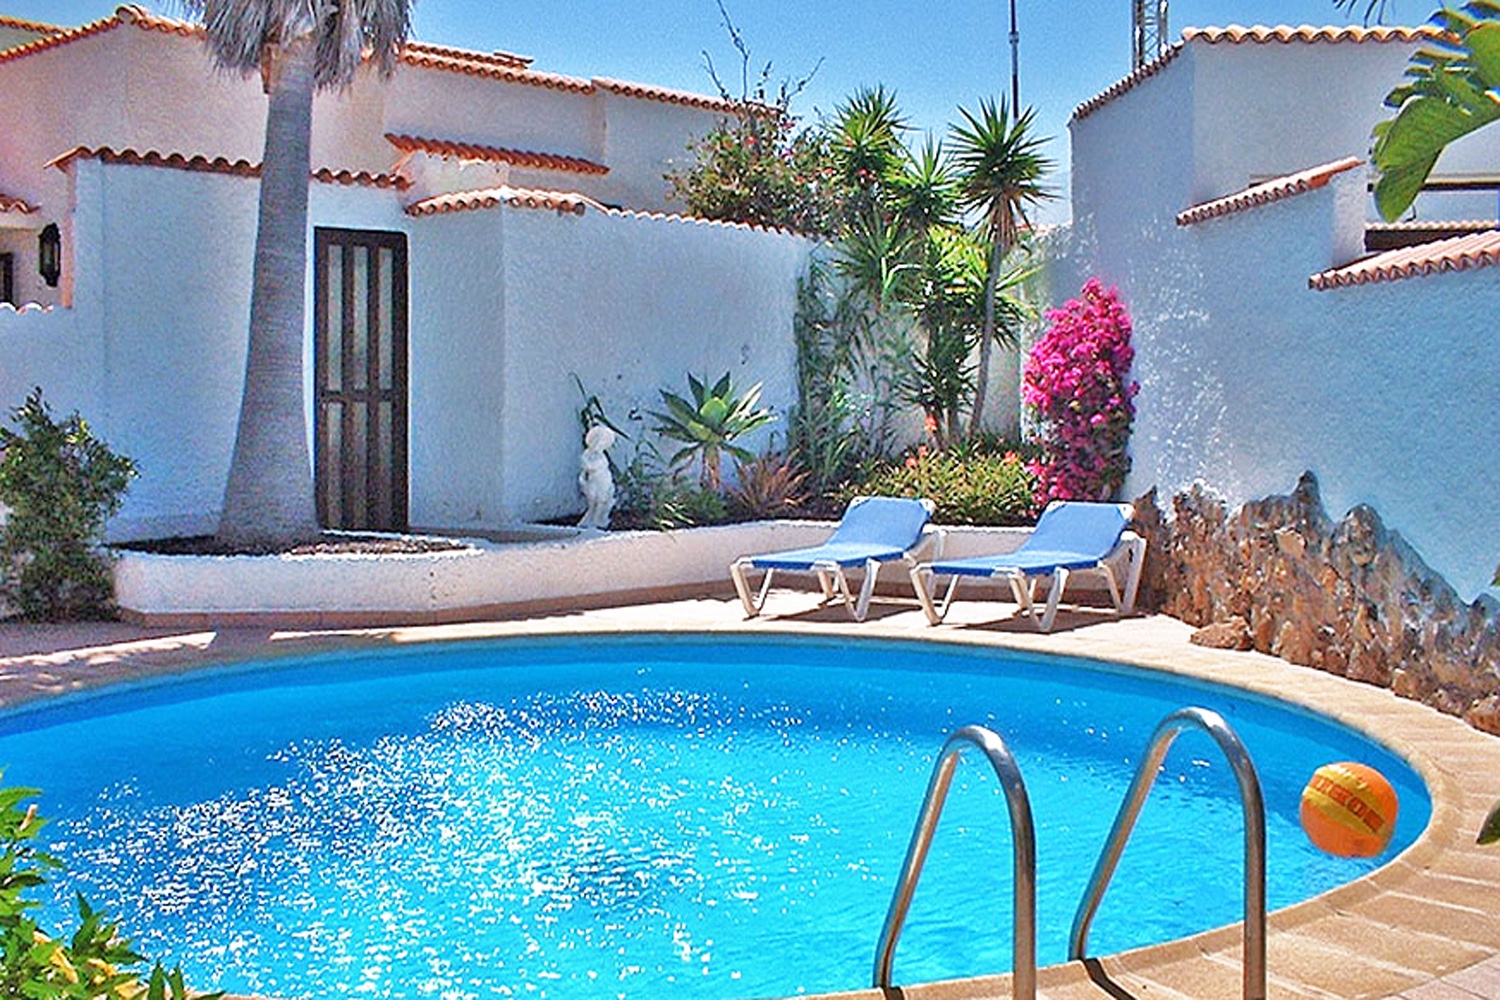 Hus til leje i den sydlige del af Tenerife med privat pool nær stranden i Porís de Abona.